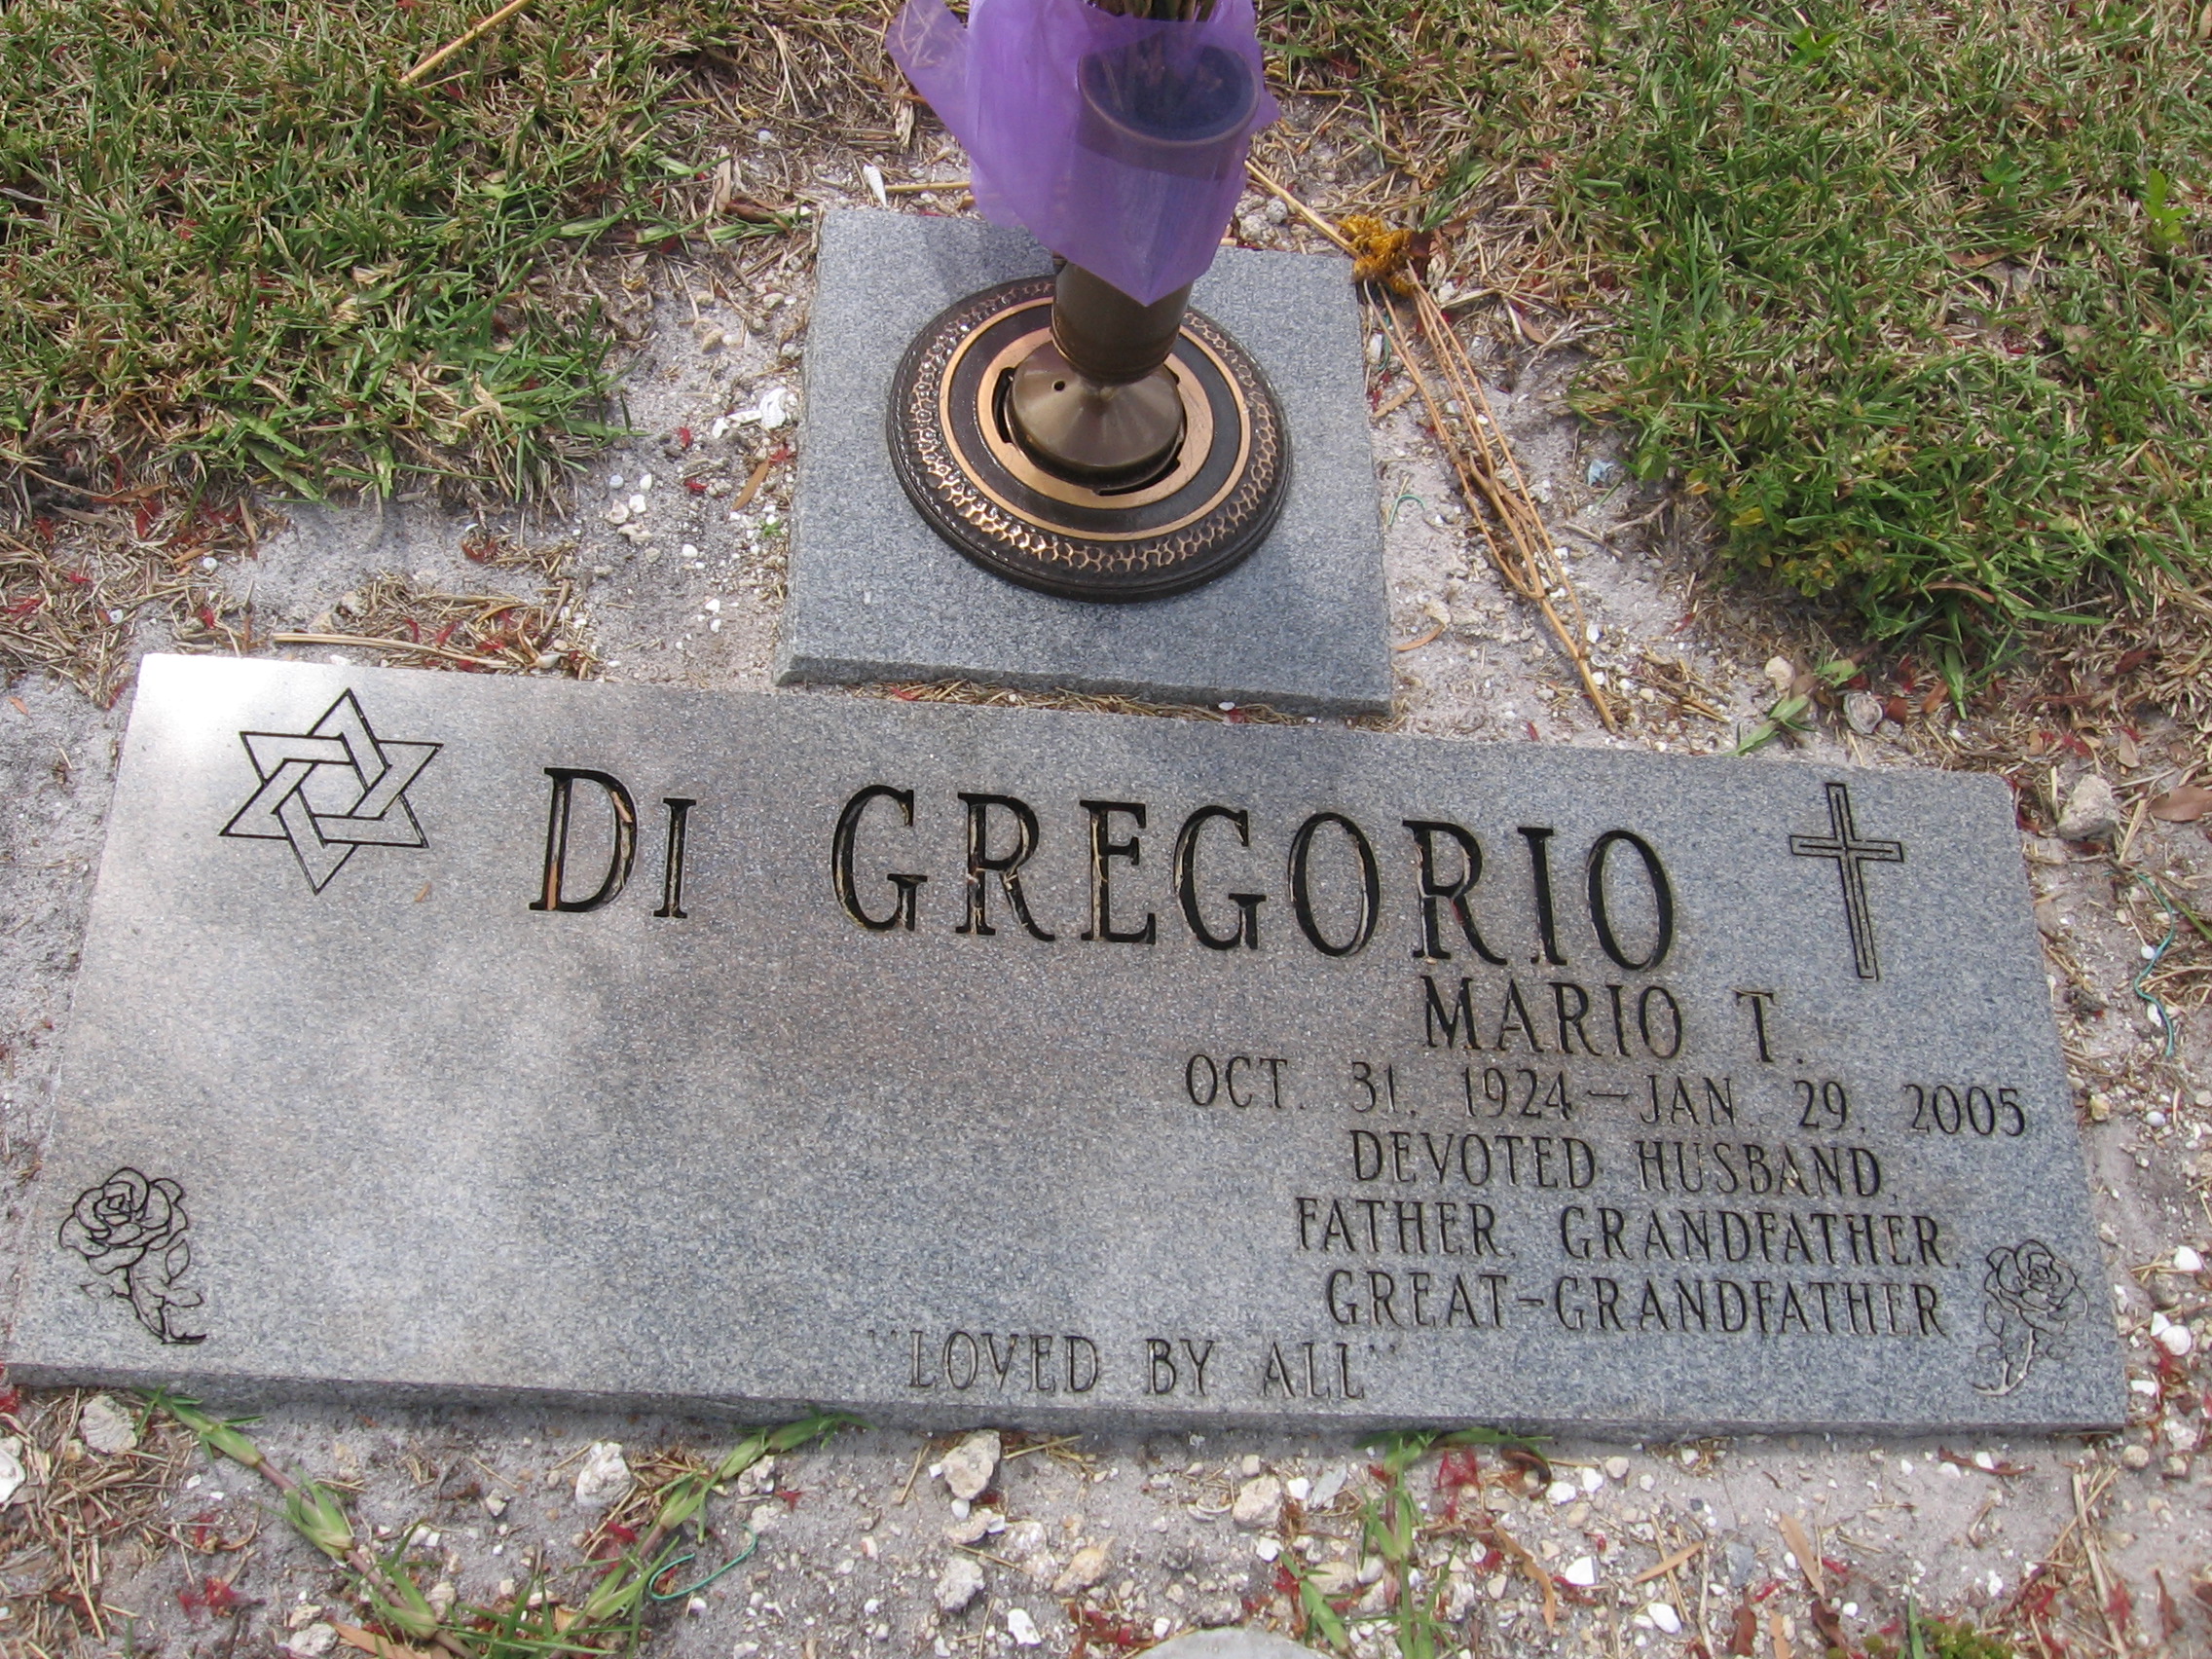 Mario T Di Gregorio